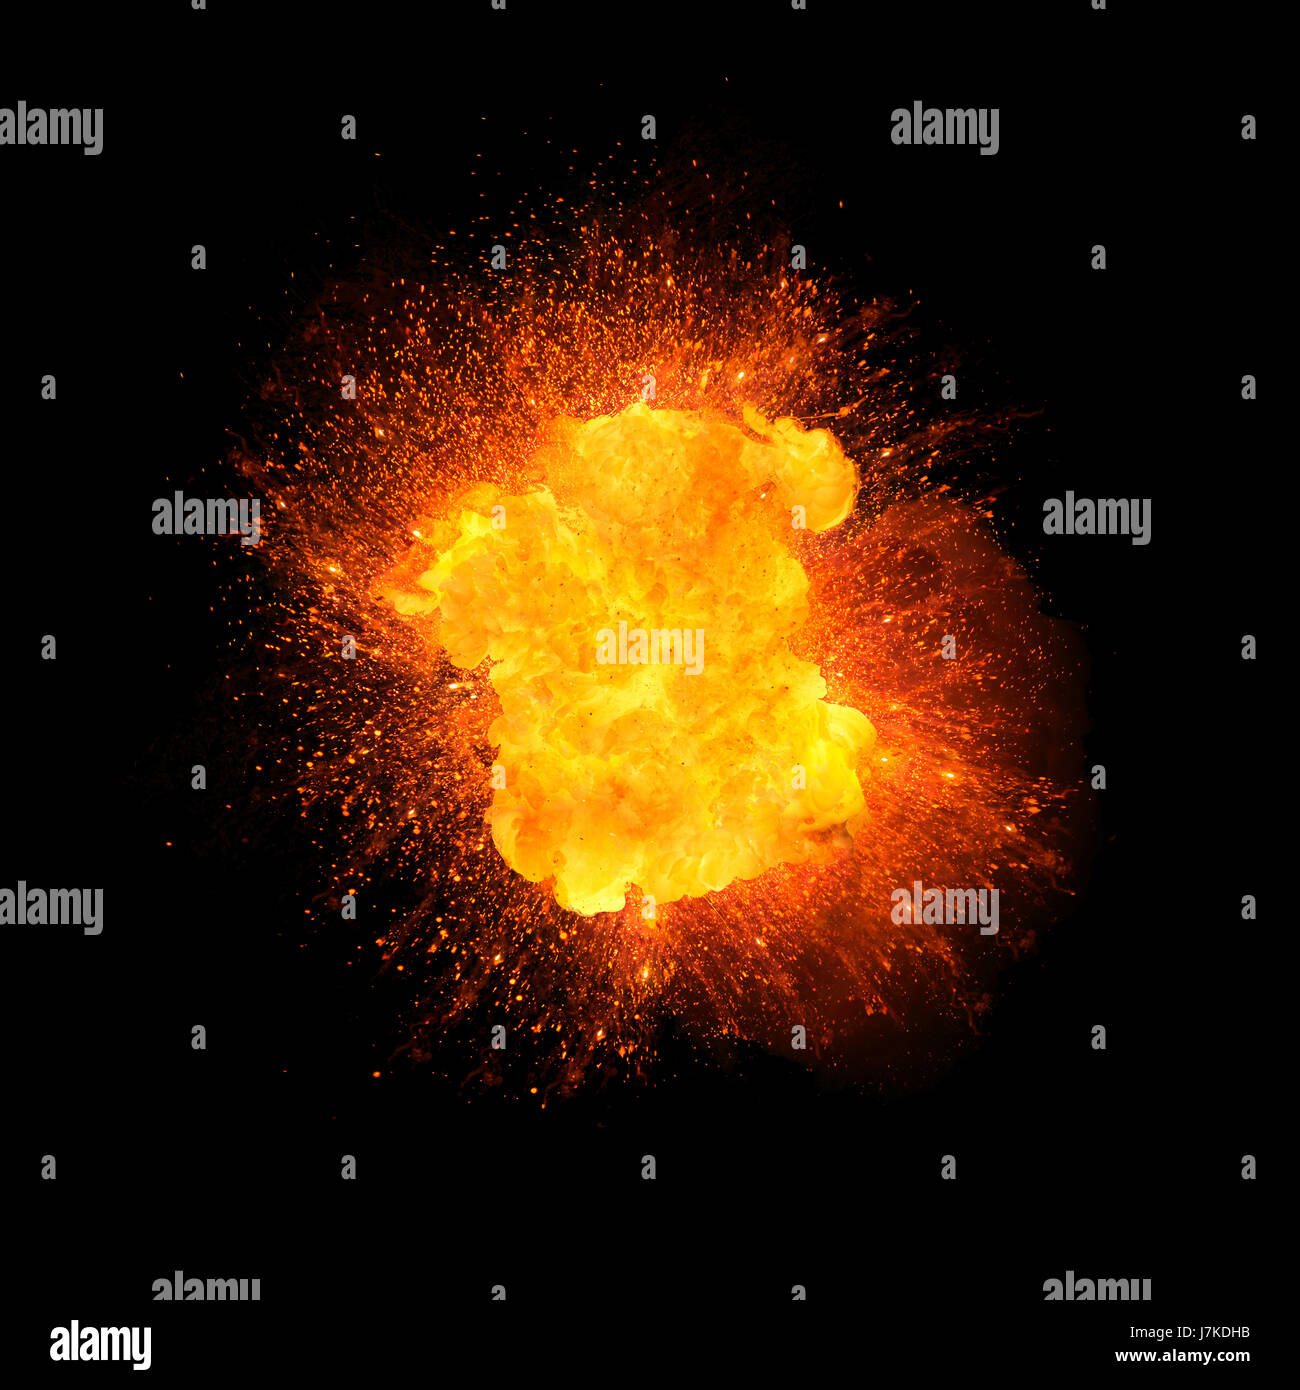 Realistica esplosione di fuoco, di colore arancione con scintille isolati su sfondo nero Foto Stock